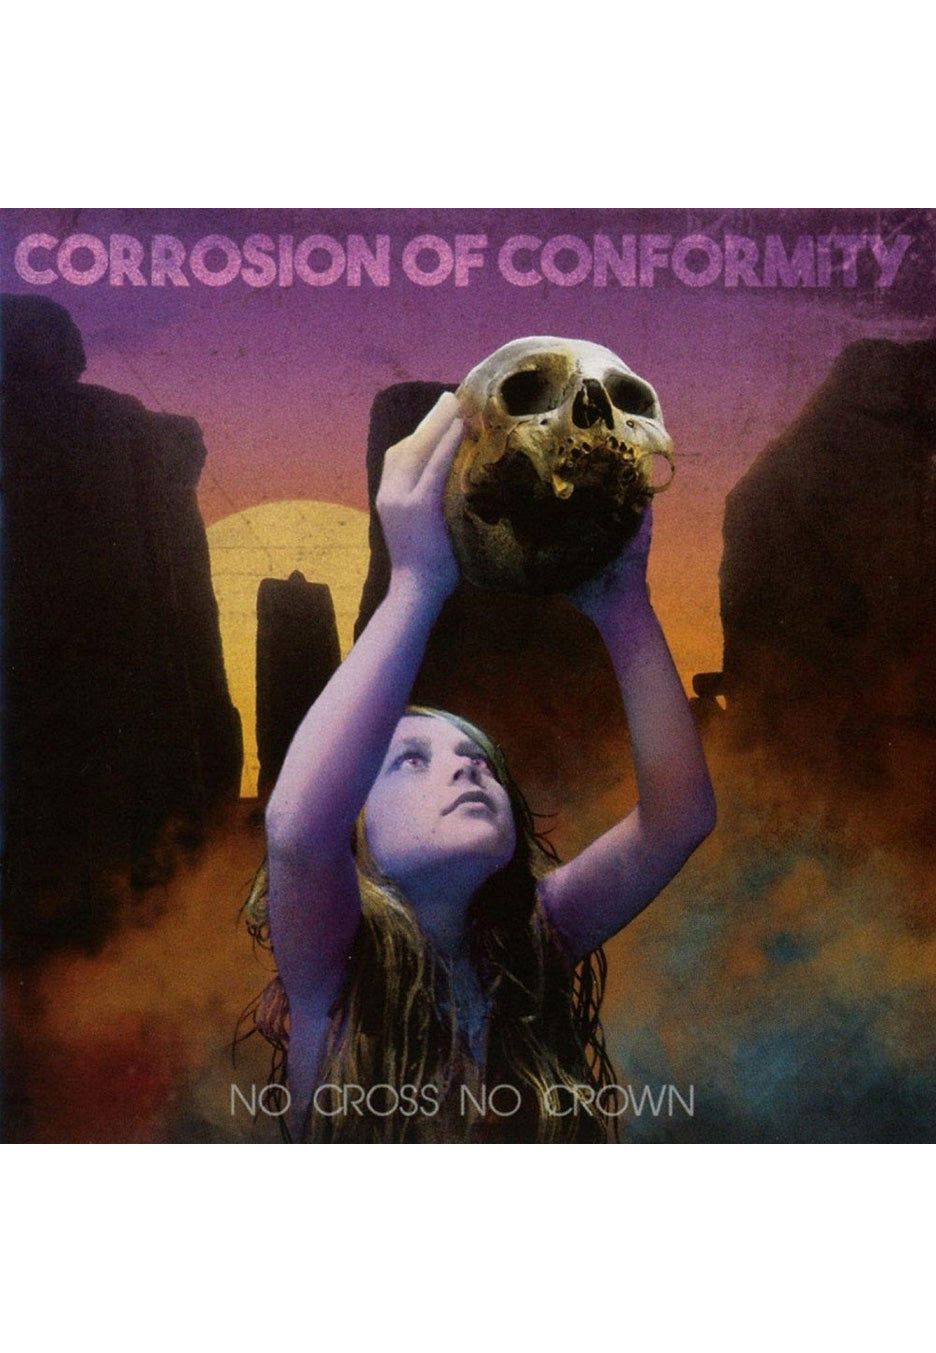 Corrosion Of Conformity - No Cross No Crown Mustard - Colored 2 Vinyl